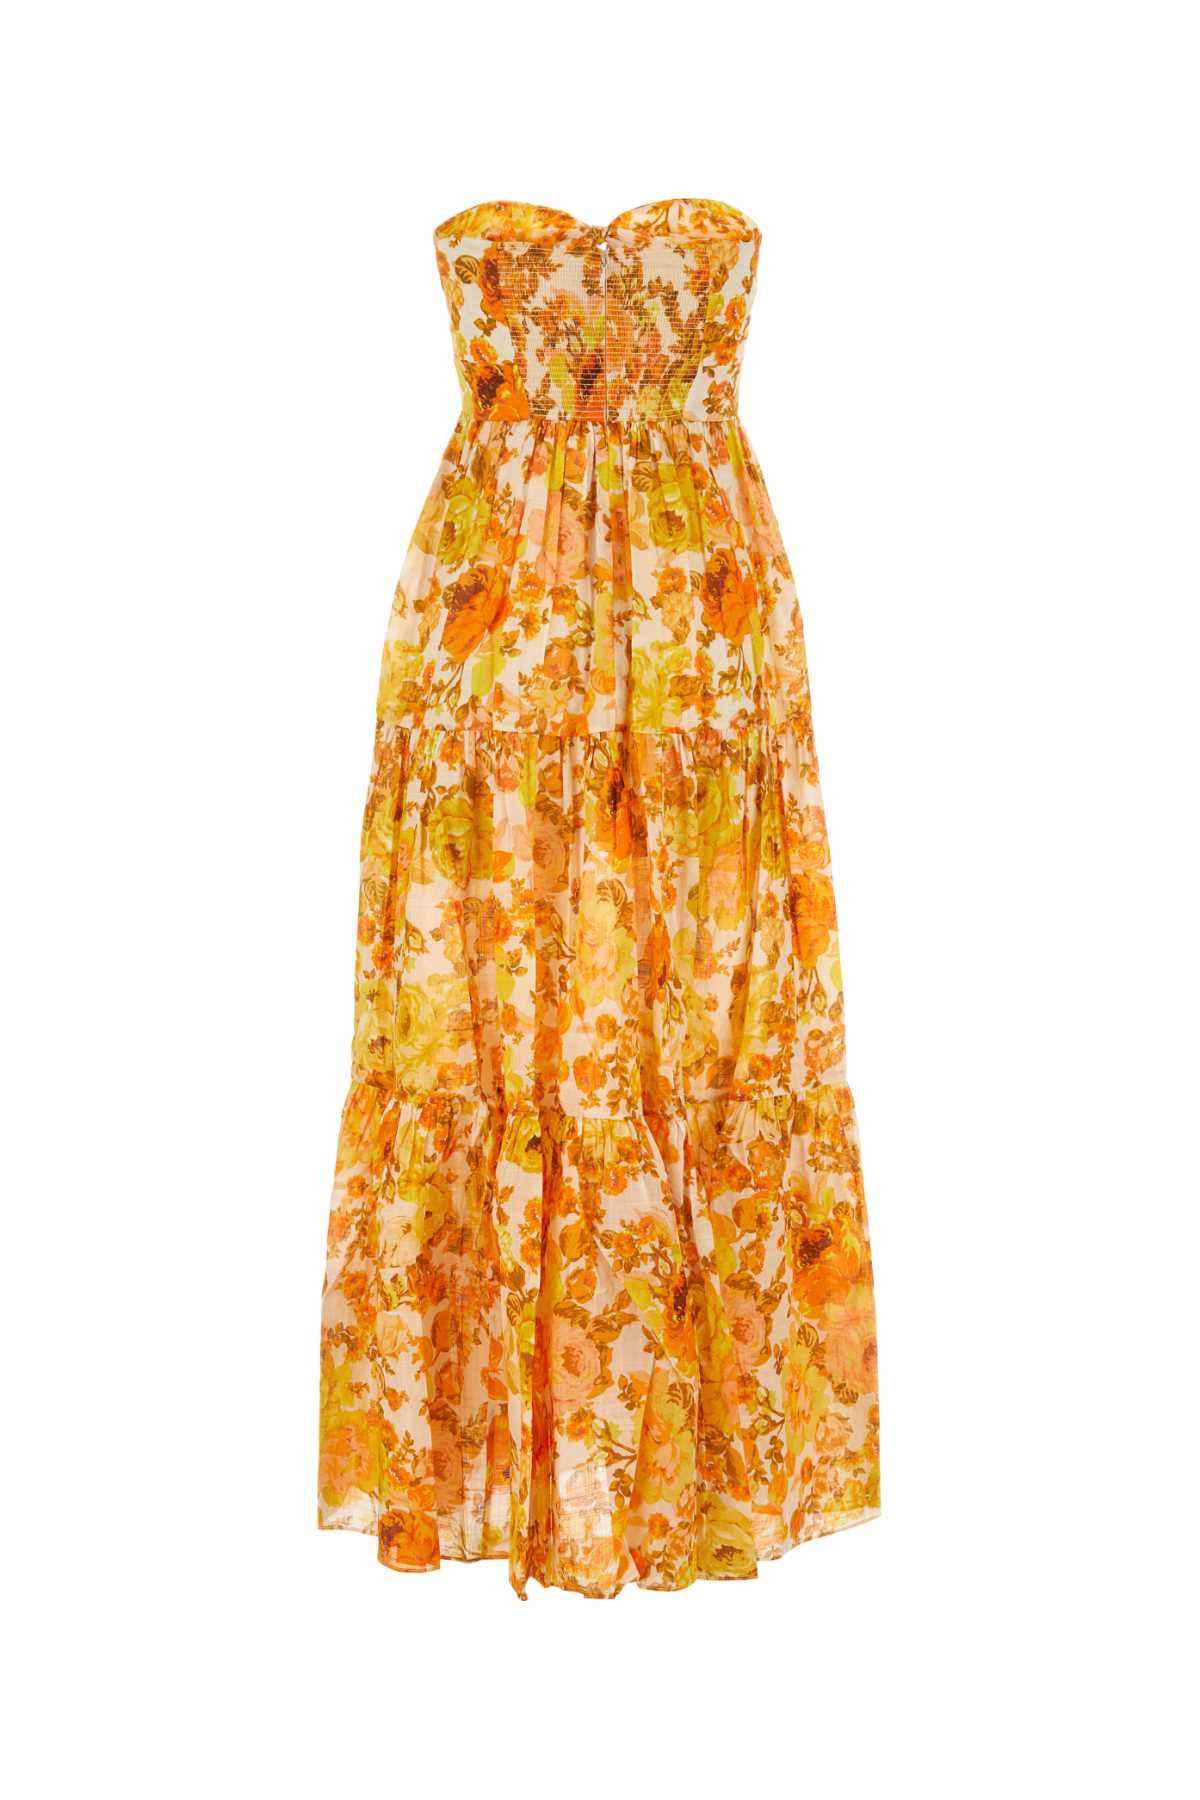 Zimmermann Printed Cotton Raie Dress In Yelloworangefloral